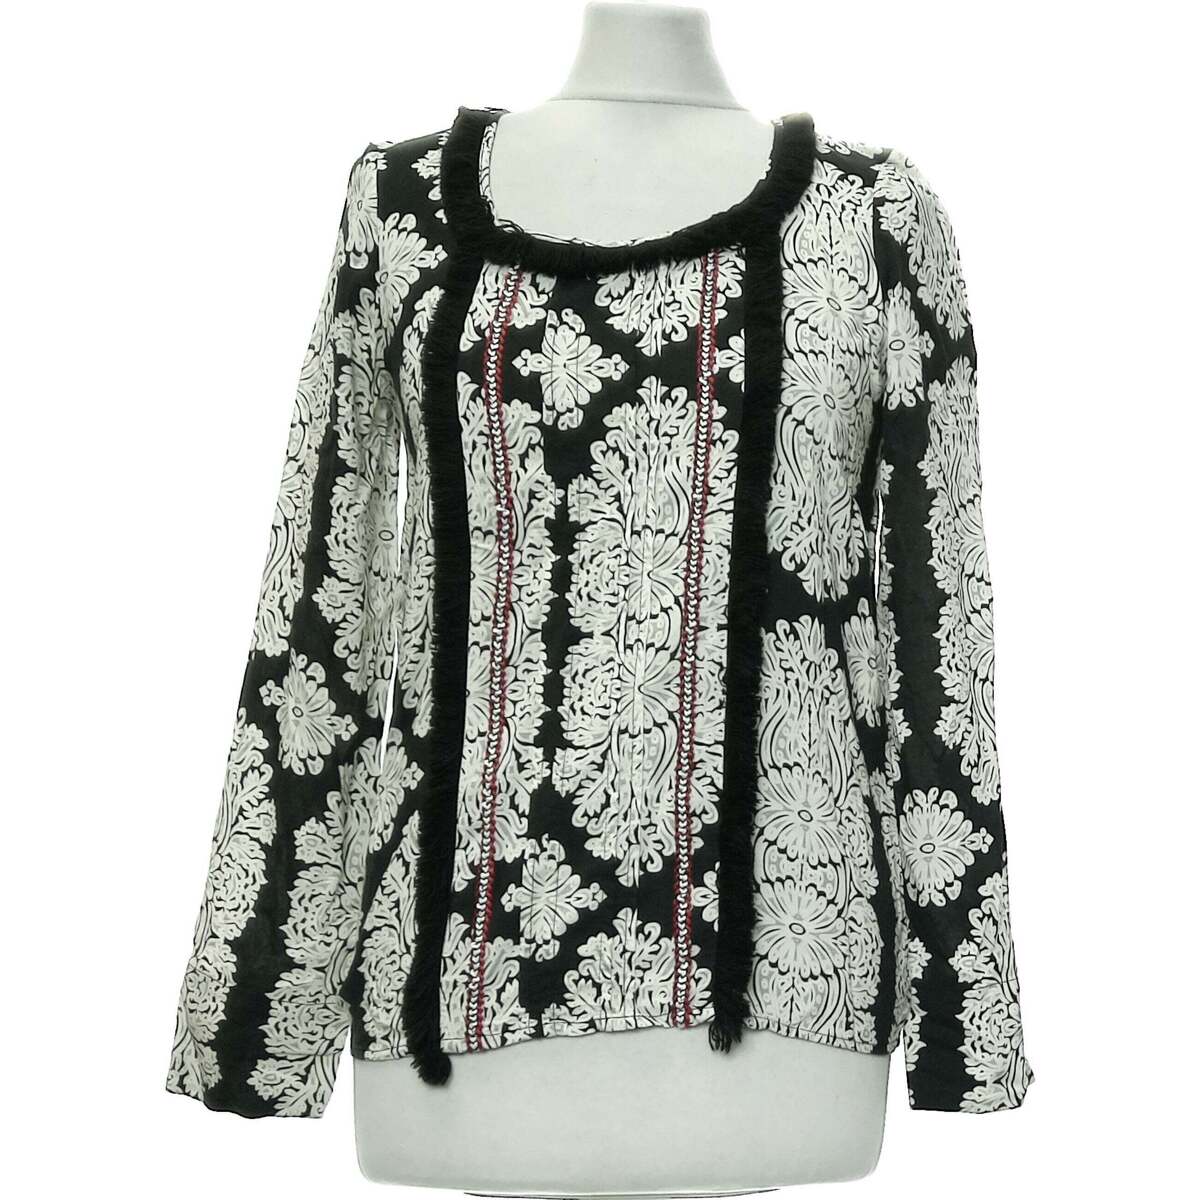 Vêtements Femme Tops / Blouses Kookaï blouse  36 - T1 - S Noir Noir